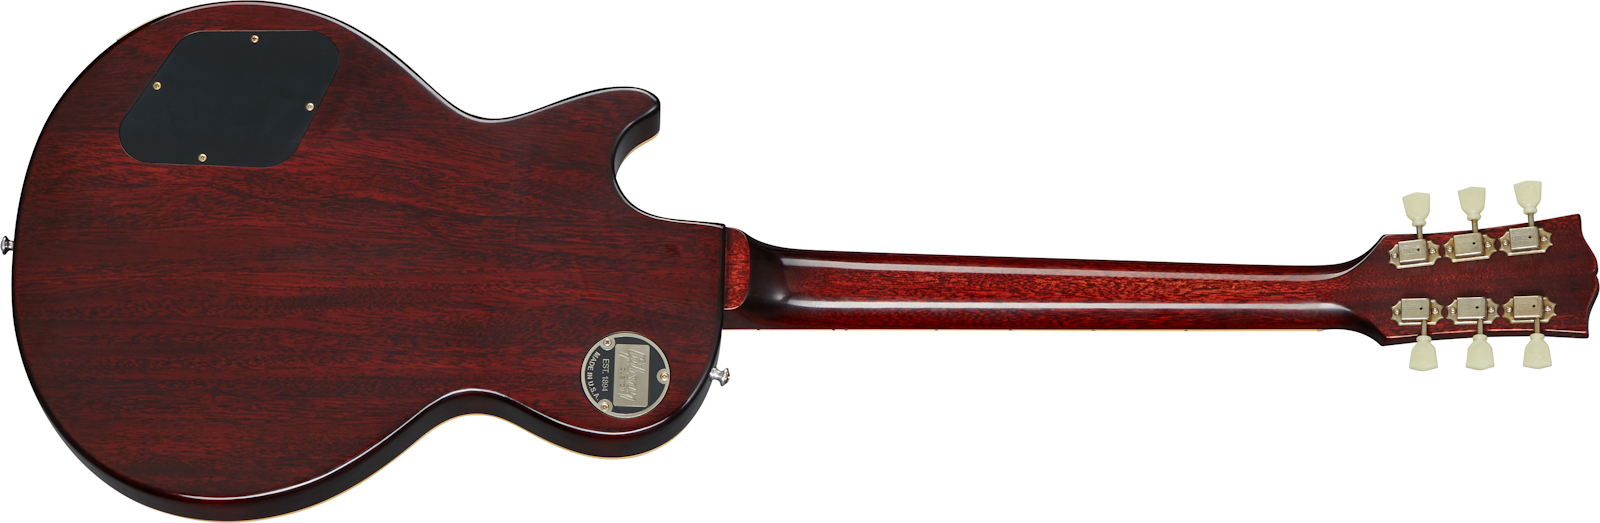 Gibson Custom Shop Les Paul Standard 1959 Reissue 2020 2h Ht Rw - Vos Dirty Lemon - Guitare Électrique Single Cut - Variation 1